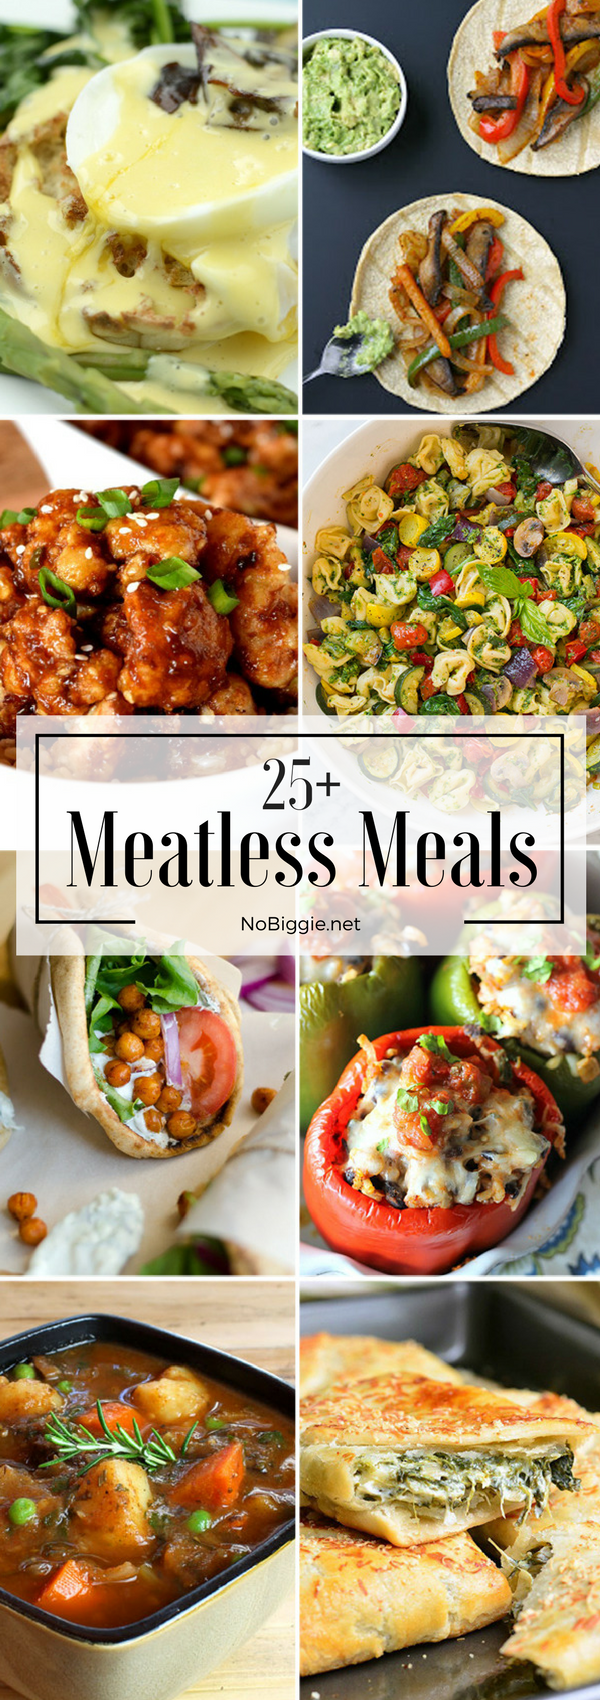 25+ Meatless Meals | NoBiggie.net